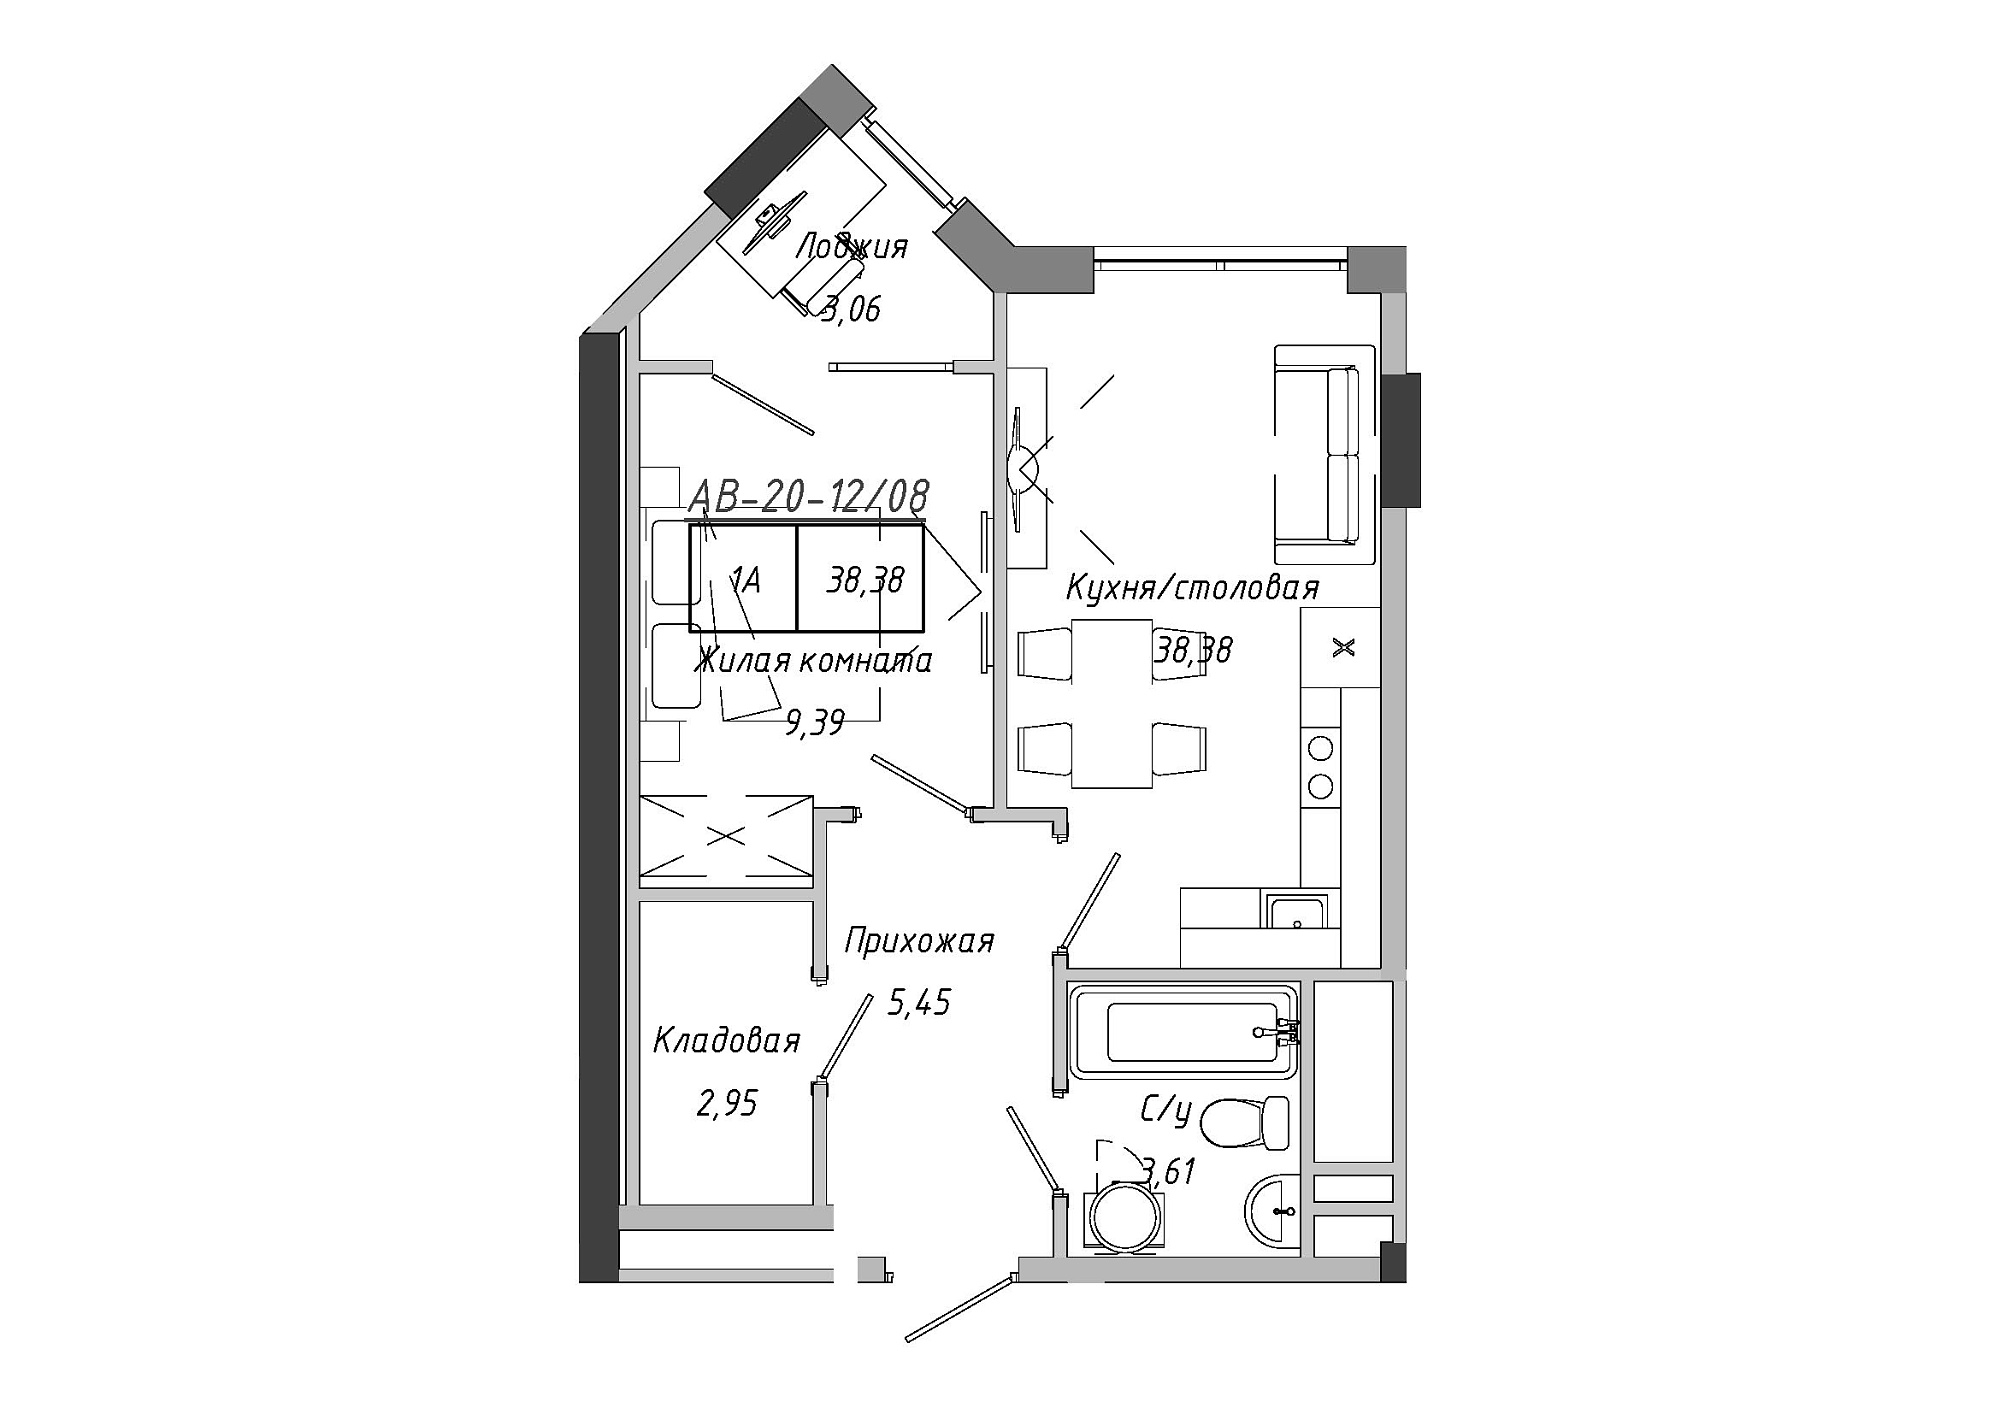 Планування 1-к квартира площею 38.85м2, AB-20-12/00008.